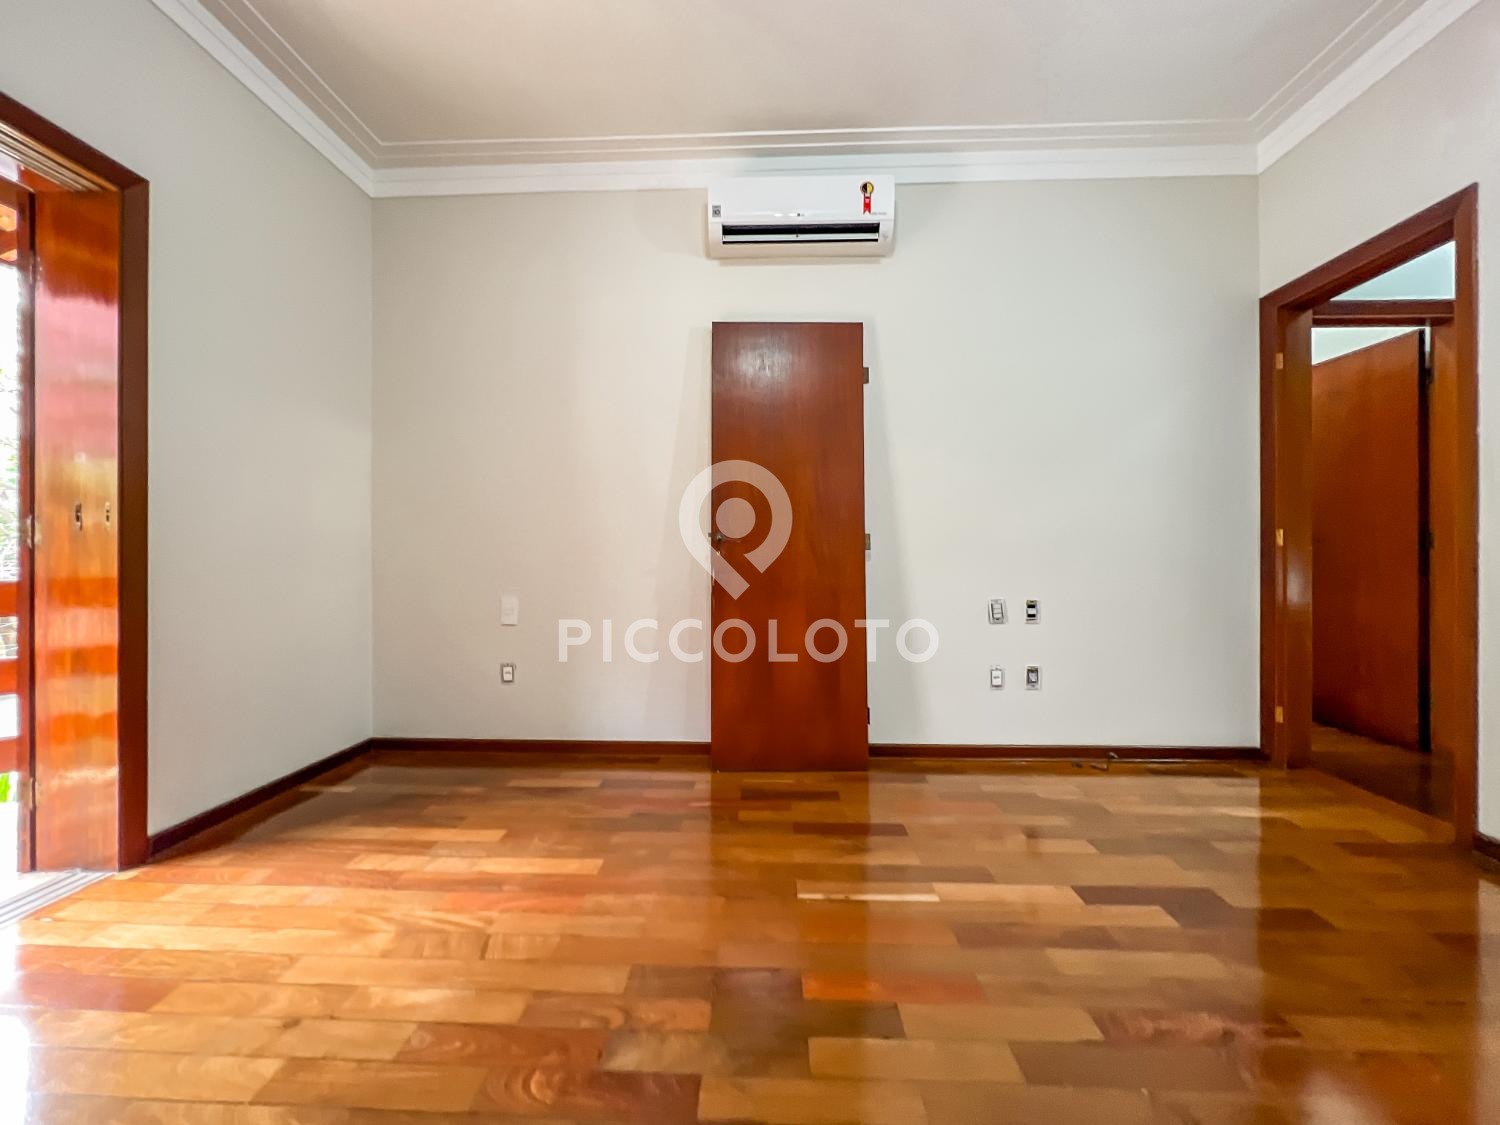 Piccoloto -Casa para alugar no Bairro das Palmeiras em Campinas